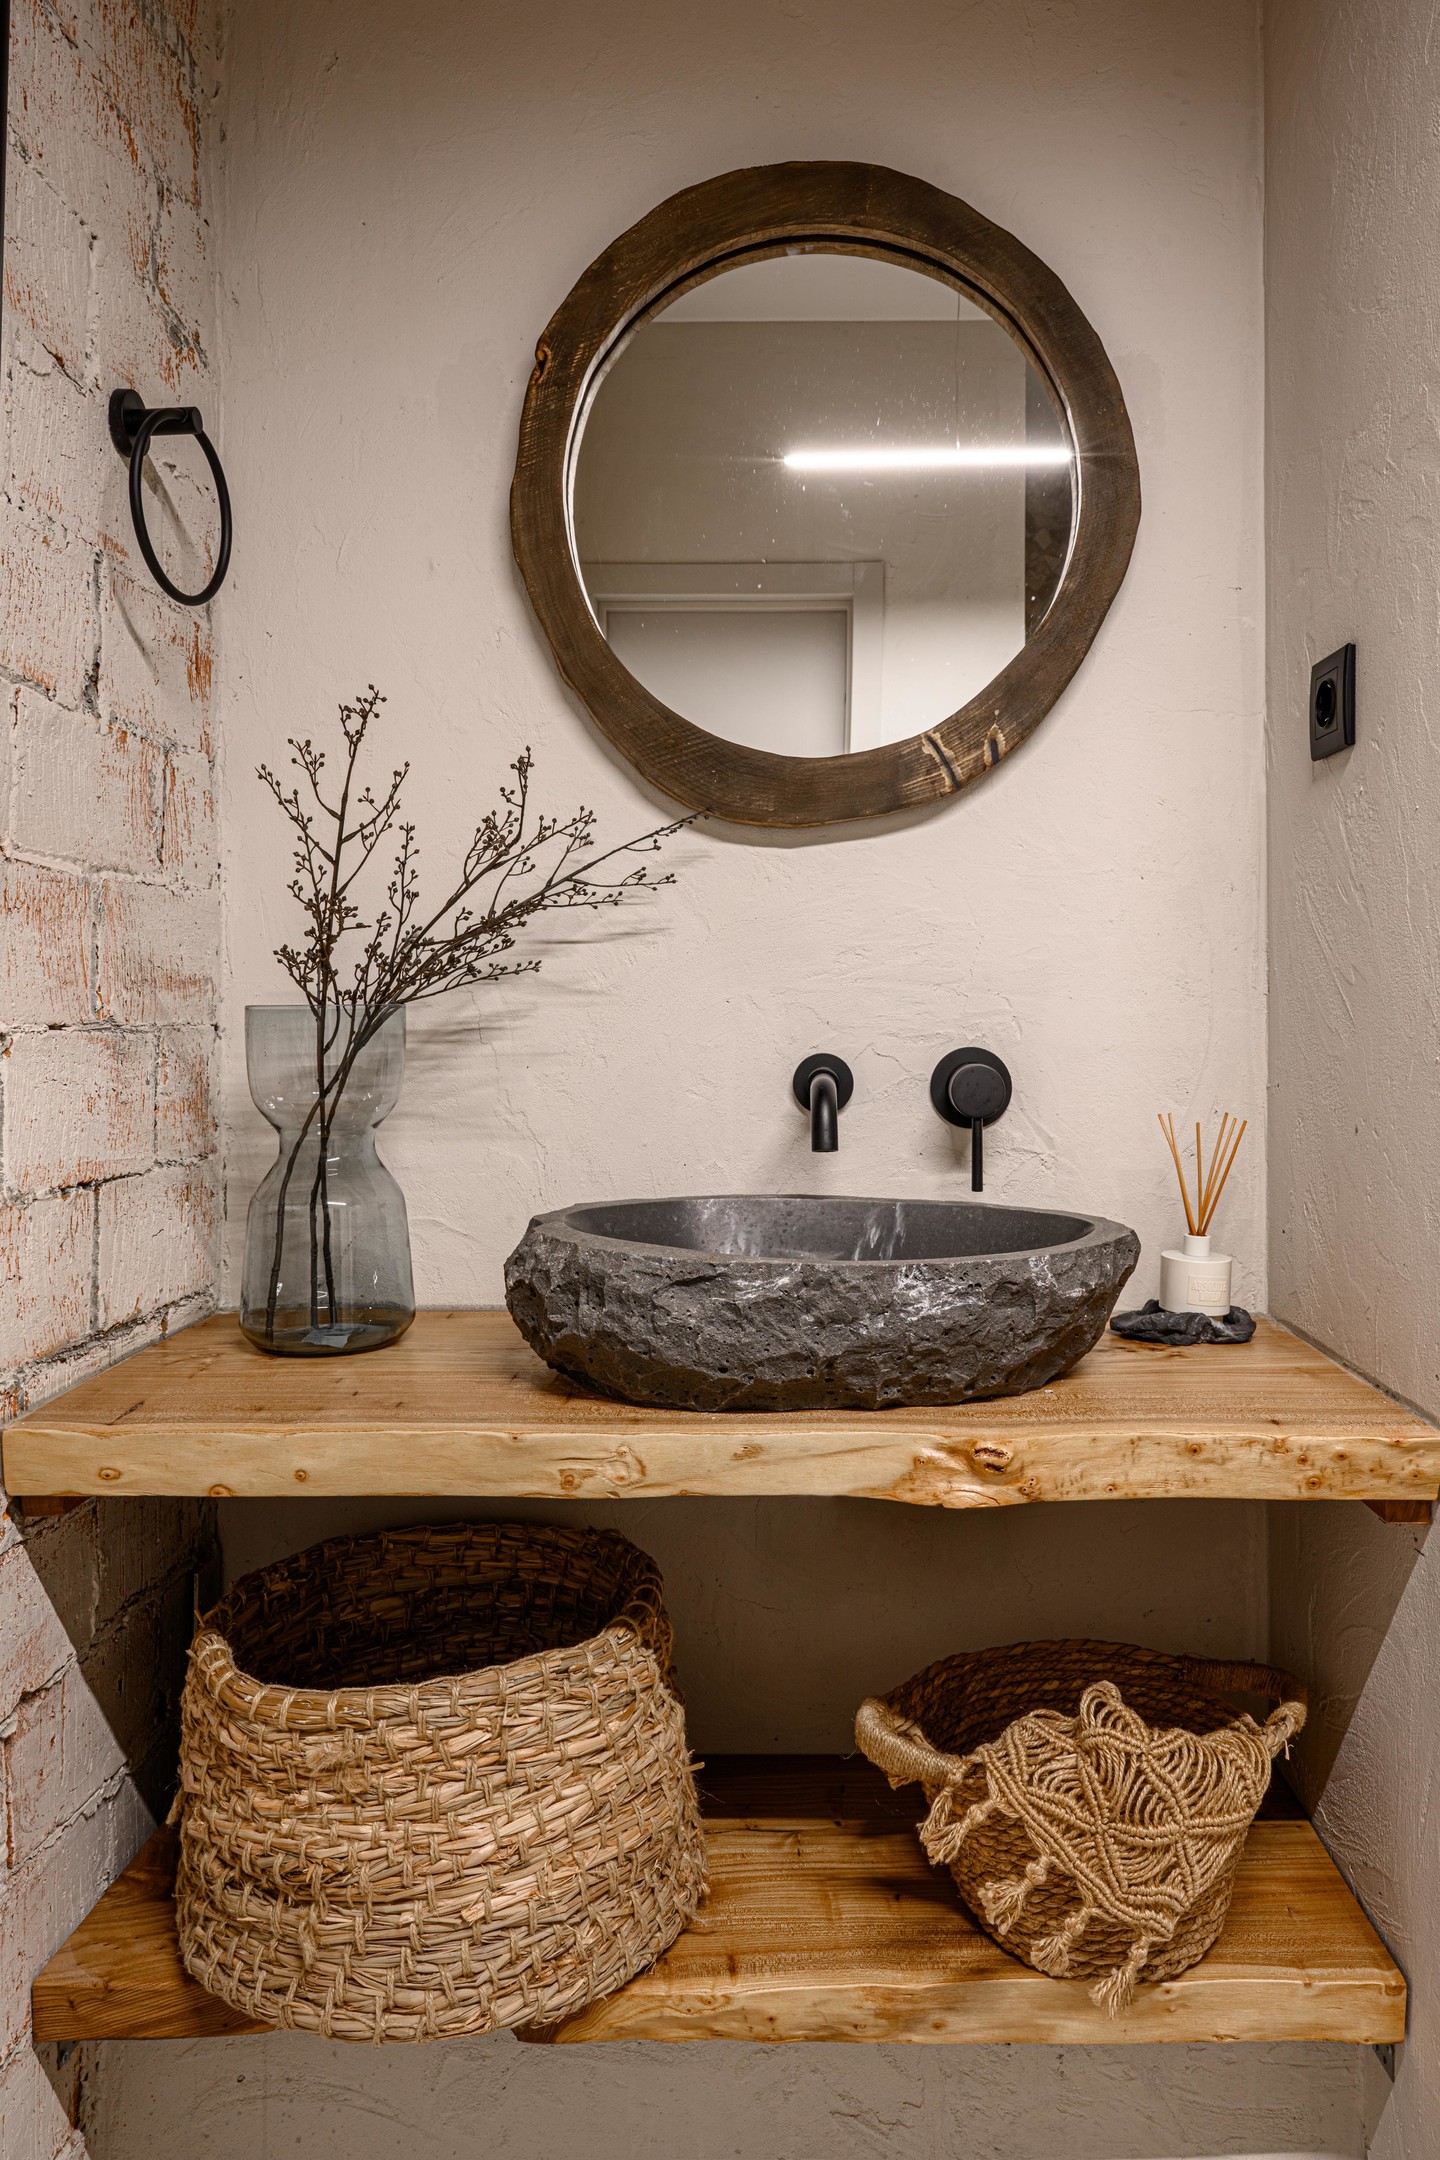 Một góc bồn rửa trong phòng tắm với những chiếc kệ được làm bằng gỗ tự nhiên, một phần tường ốp gạch thô, đặc biệt là chiếc bồn rửa bằng đá và những chiếc giỏ đan thô sơ mà quyến rũ.